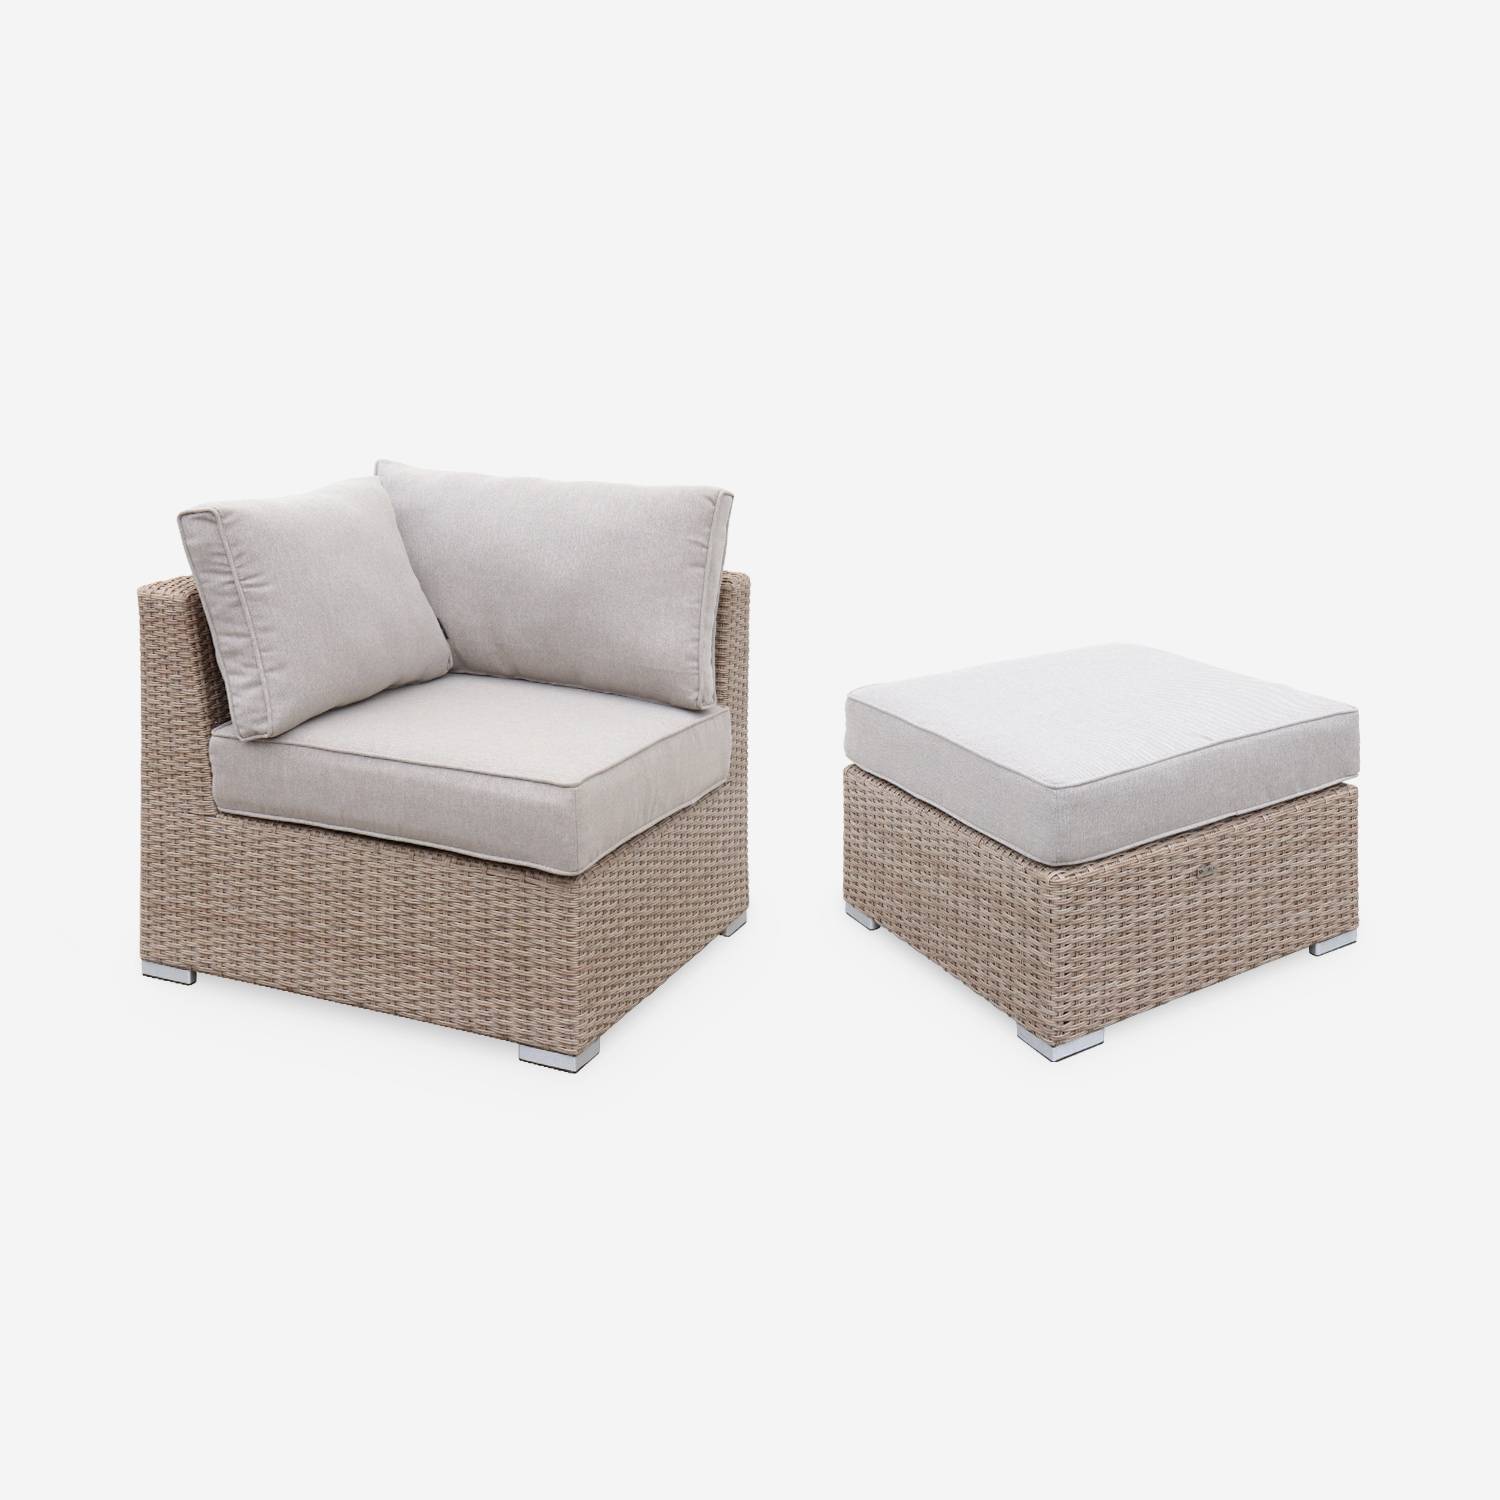 Muebles de jardín de resina trenzada redonda - VINCI - Cojines beige naturales - 5 asientos, ajustable, ultra cómodo, de alta gama Photo5